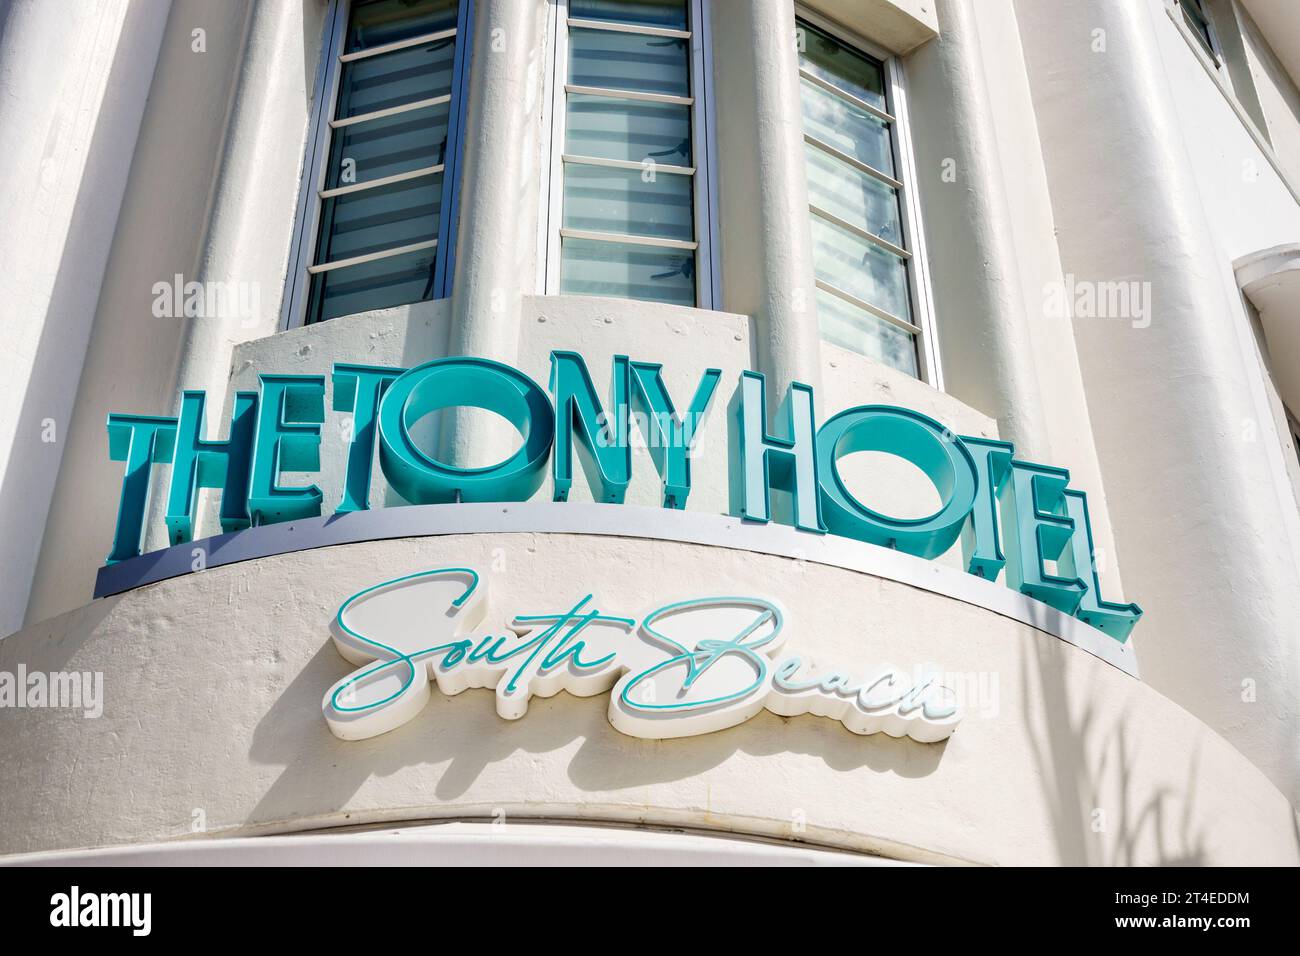 Miami Beach Floride, extérieur, entrée principale de l'hôtel, Collins Avenue, enseigne Tony Hotel South Beach, hôtels motels entreprises Banque D'Images